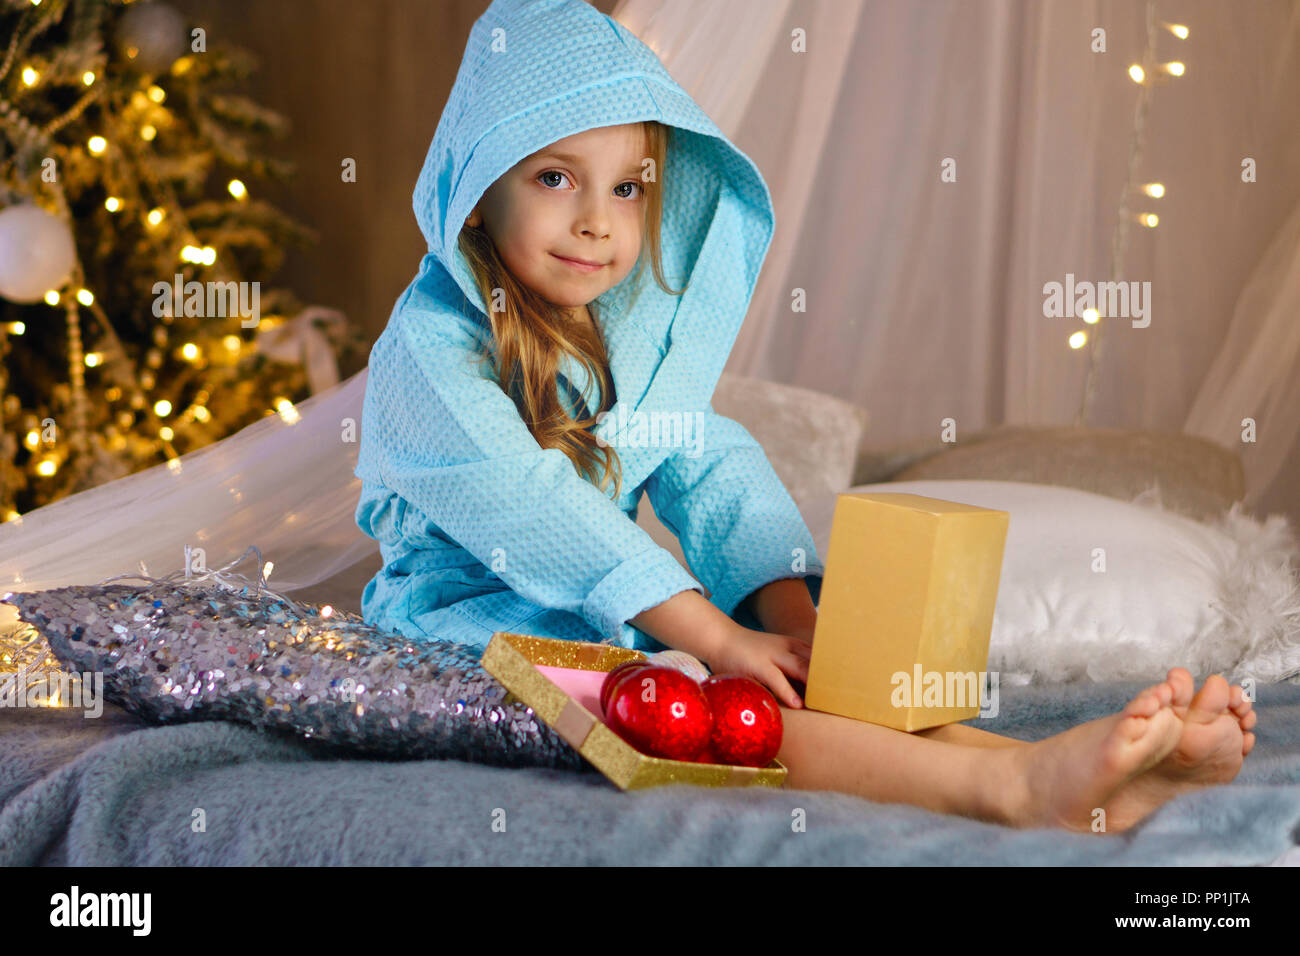 Bambina in accappatoio si siede sul letto e sorrisi. Albero di natale con ornamenti in background. Infanzia felice. Foto Stock